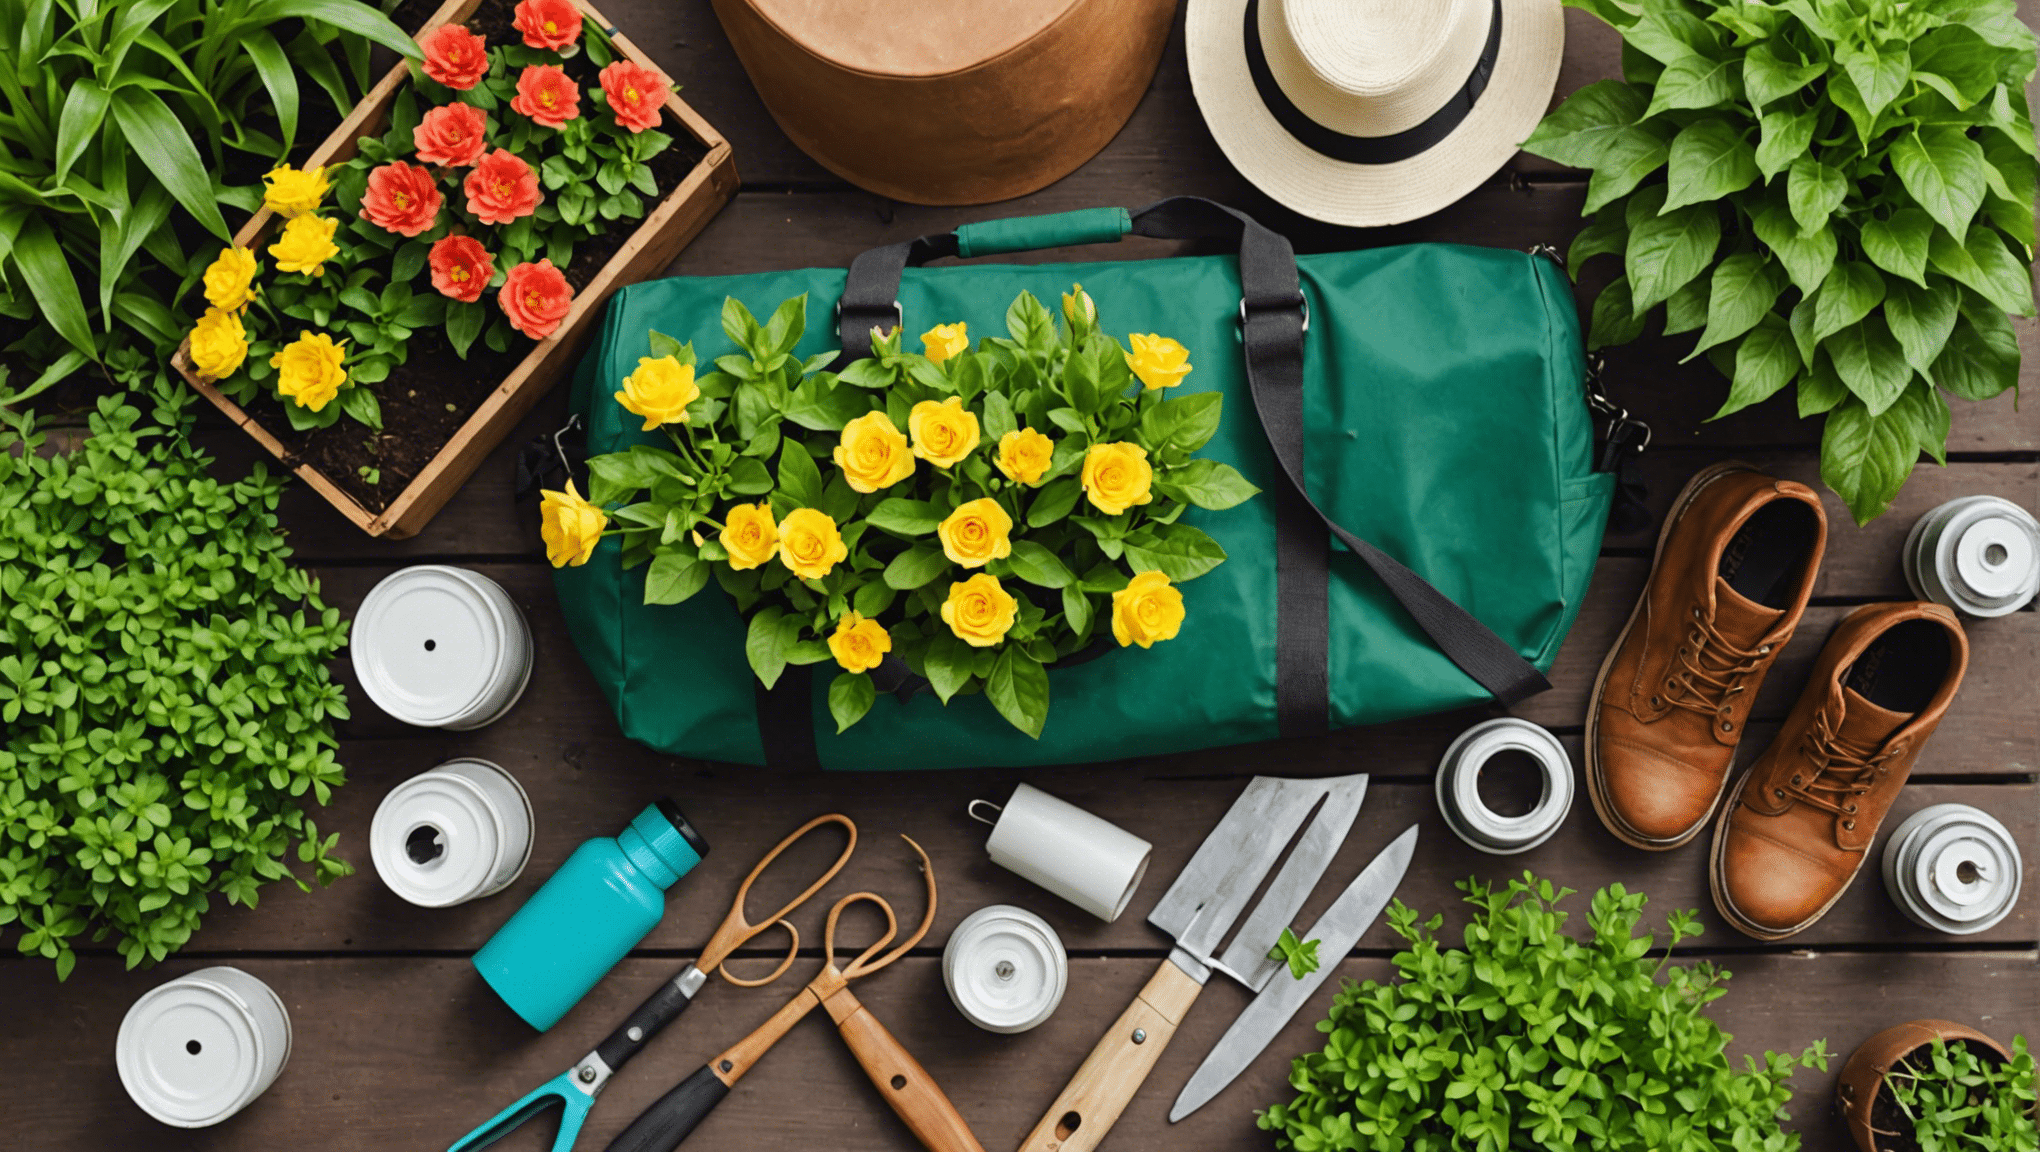 descubra os itens essenciais para incluir em sua bolsa de jardinagem para uma experiência de jardinagem descomplicada.